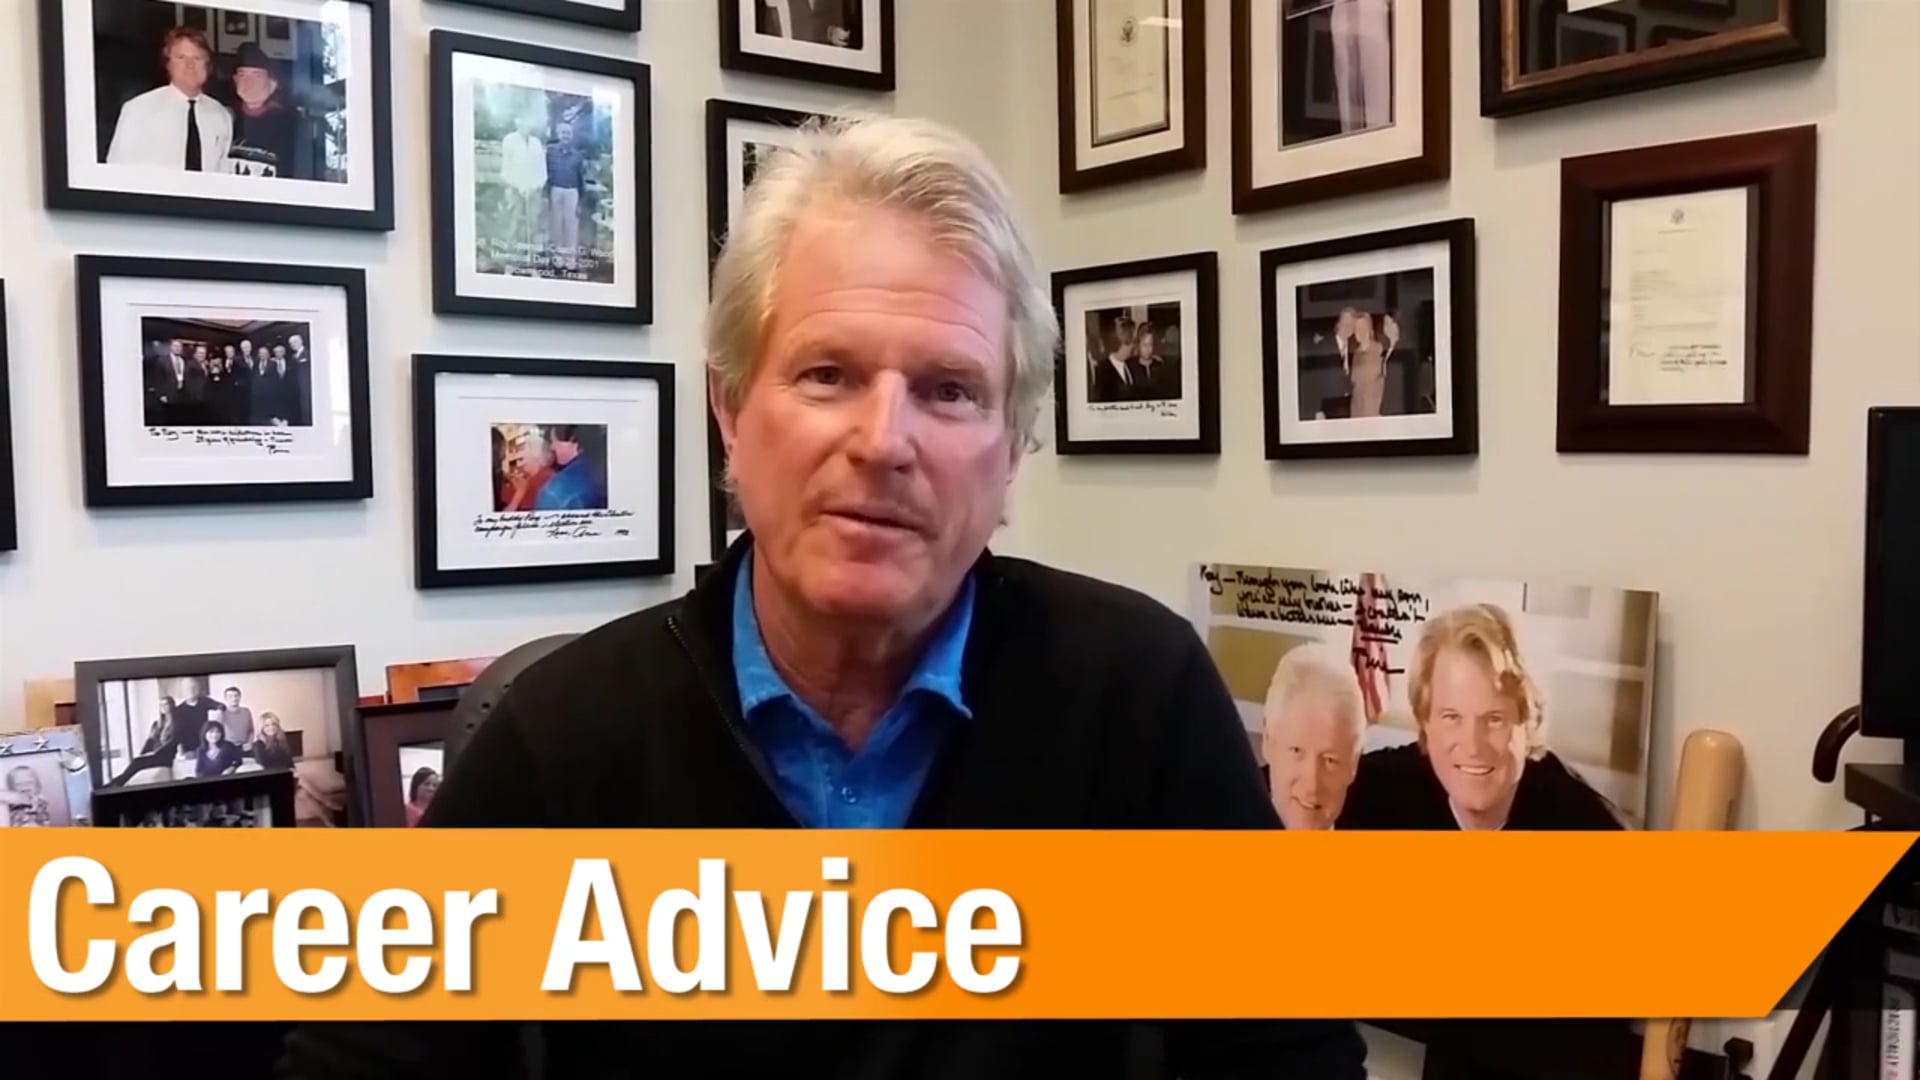 Career Advice - Entrepreneur - Roy Spence